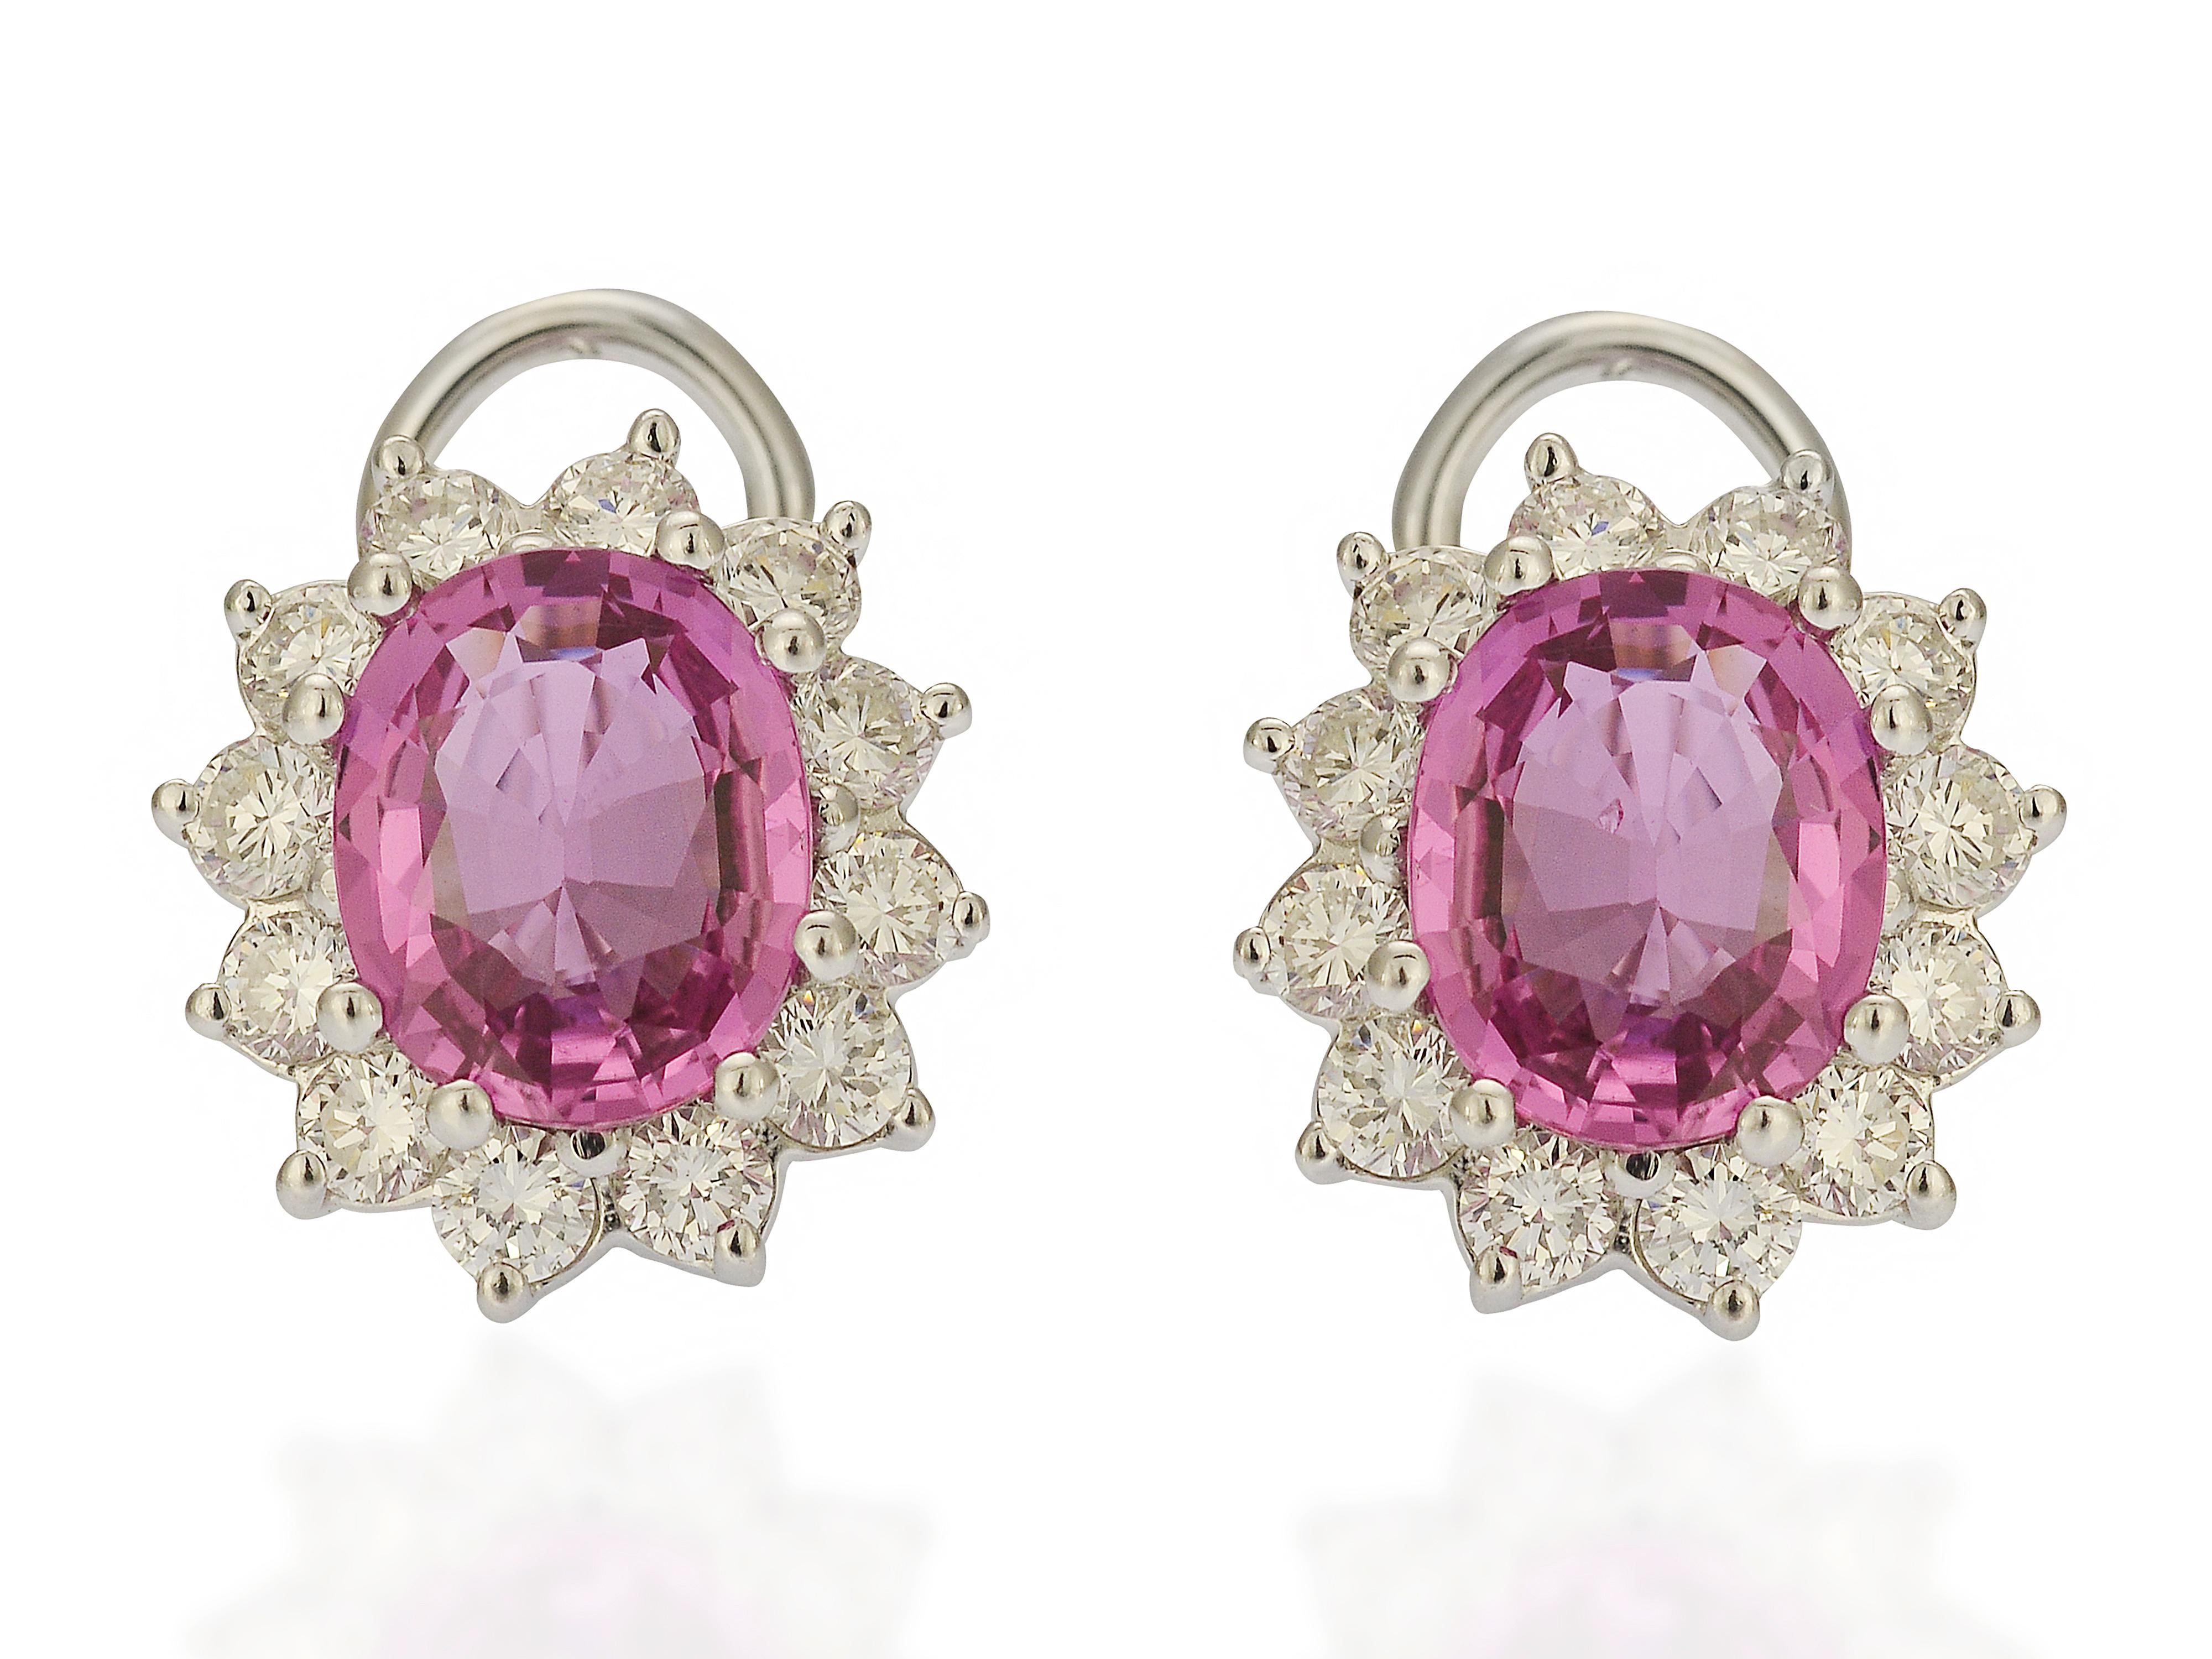 Diese leuchtend rosa, oval geschliffenen Saphir-Ohrringe sind ein klassisches Design, das nie aus der Mode kommen wird. Die Fassung besteht aus 18 Karat Weißgold und enthält über 2 Karat Diamanten der Reinheit VS und Farbe G. Der Verschluss ist ein